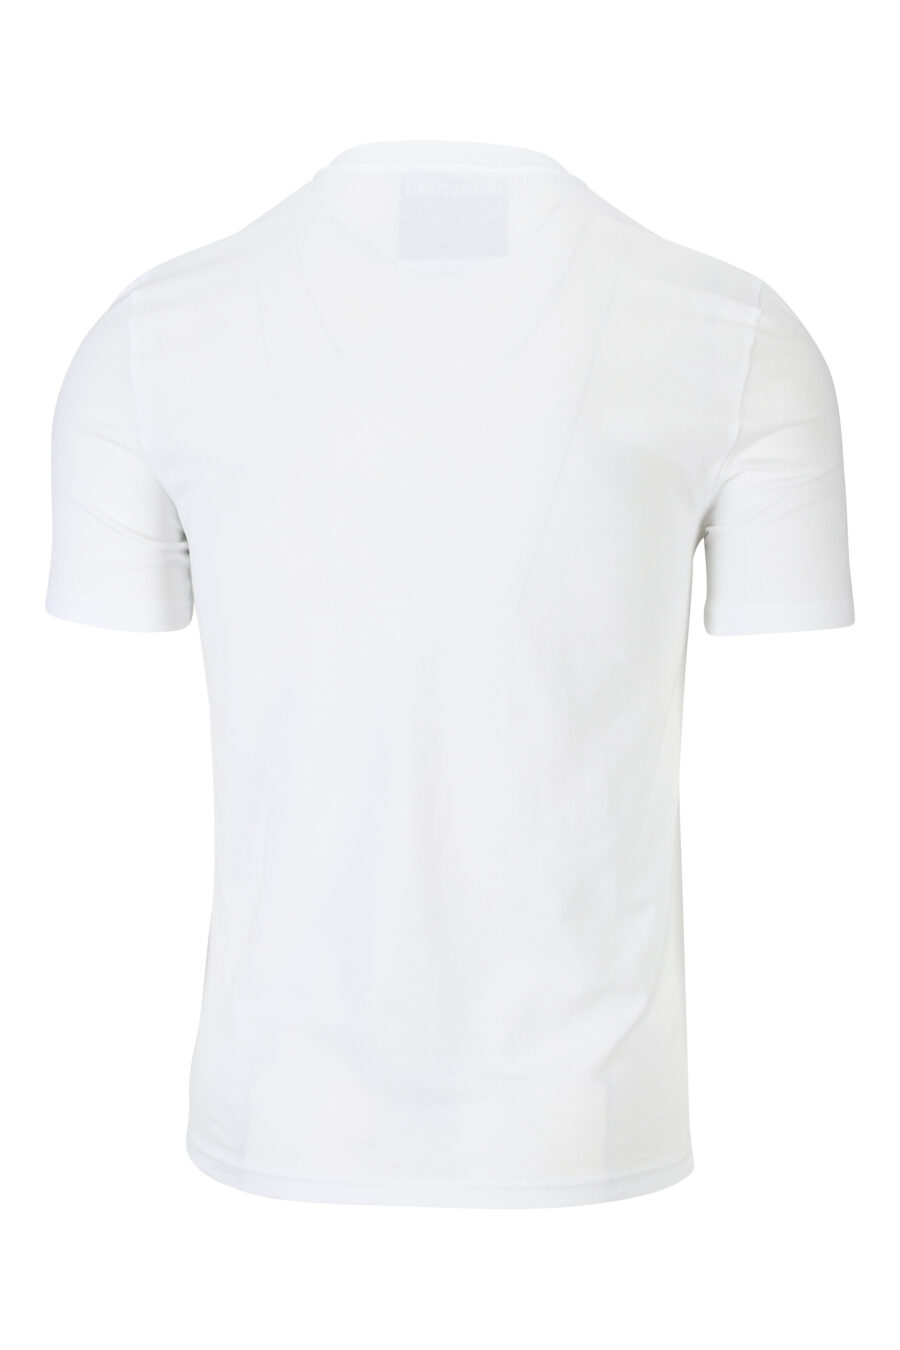 Weißes T-Shirt mit schwarzem getragenen Minilogo - 889316938791 1